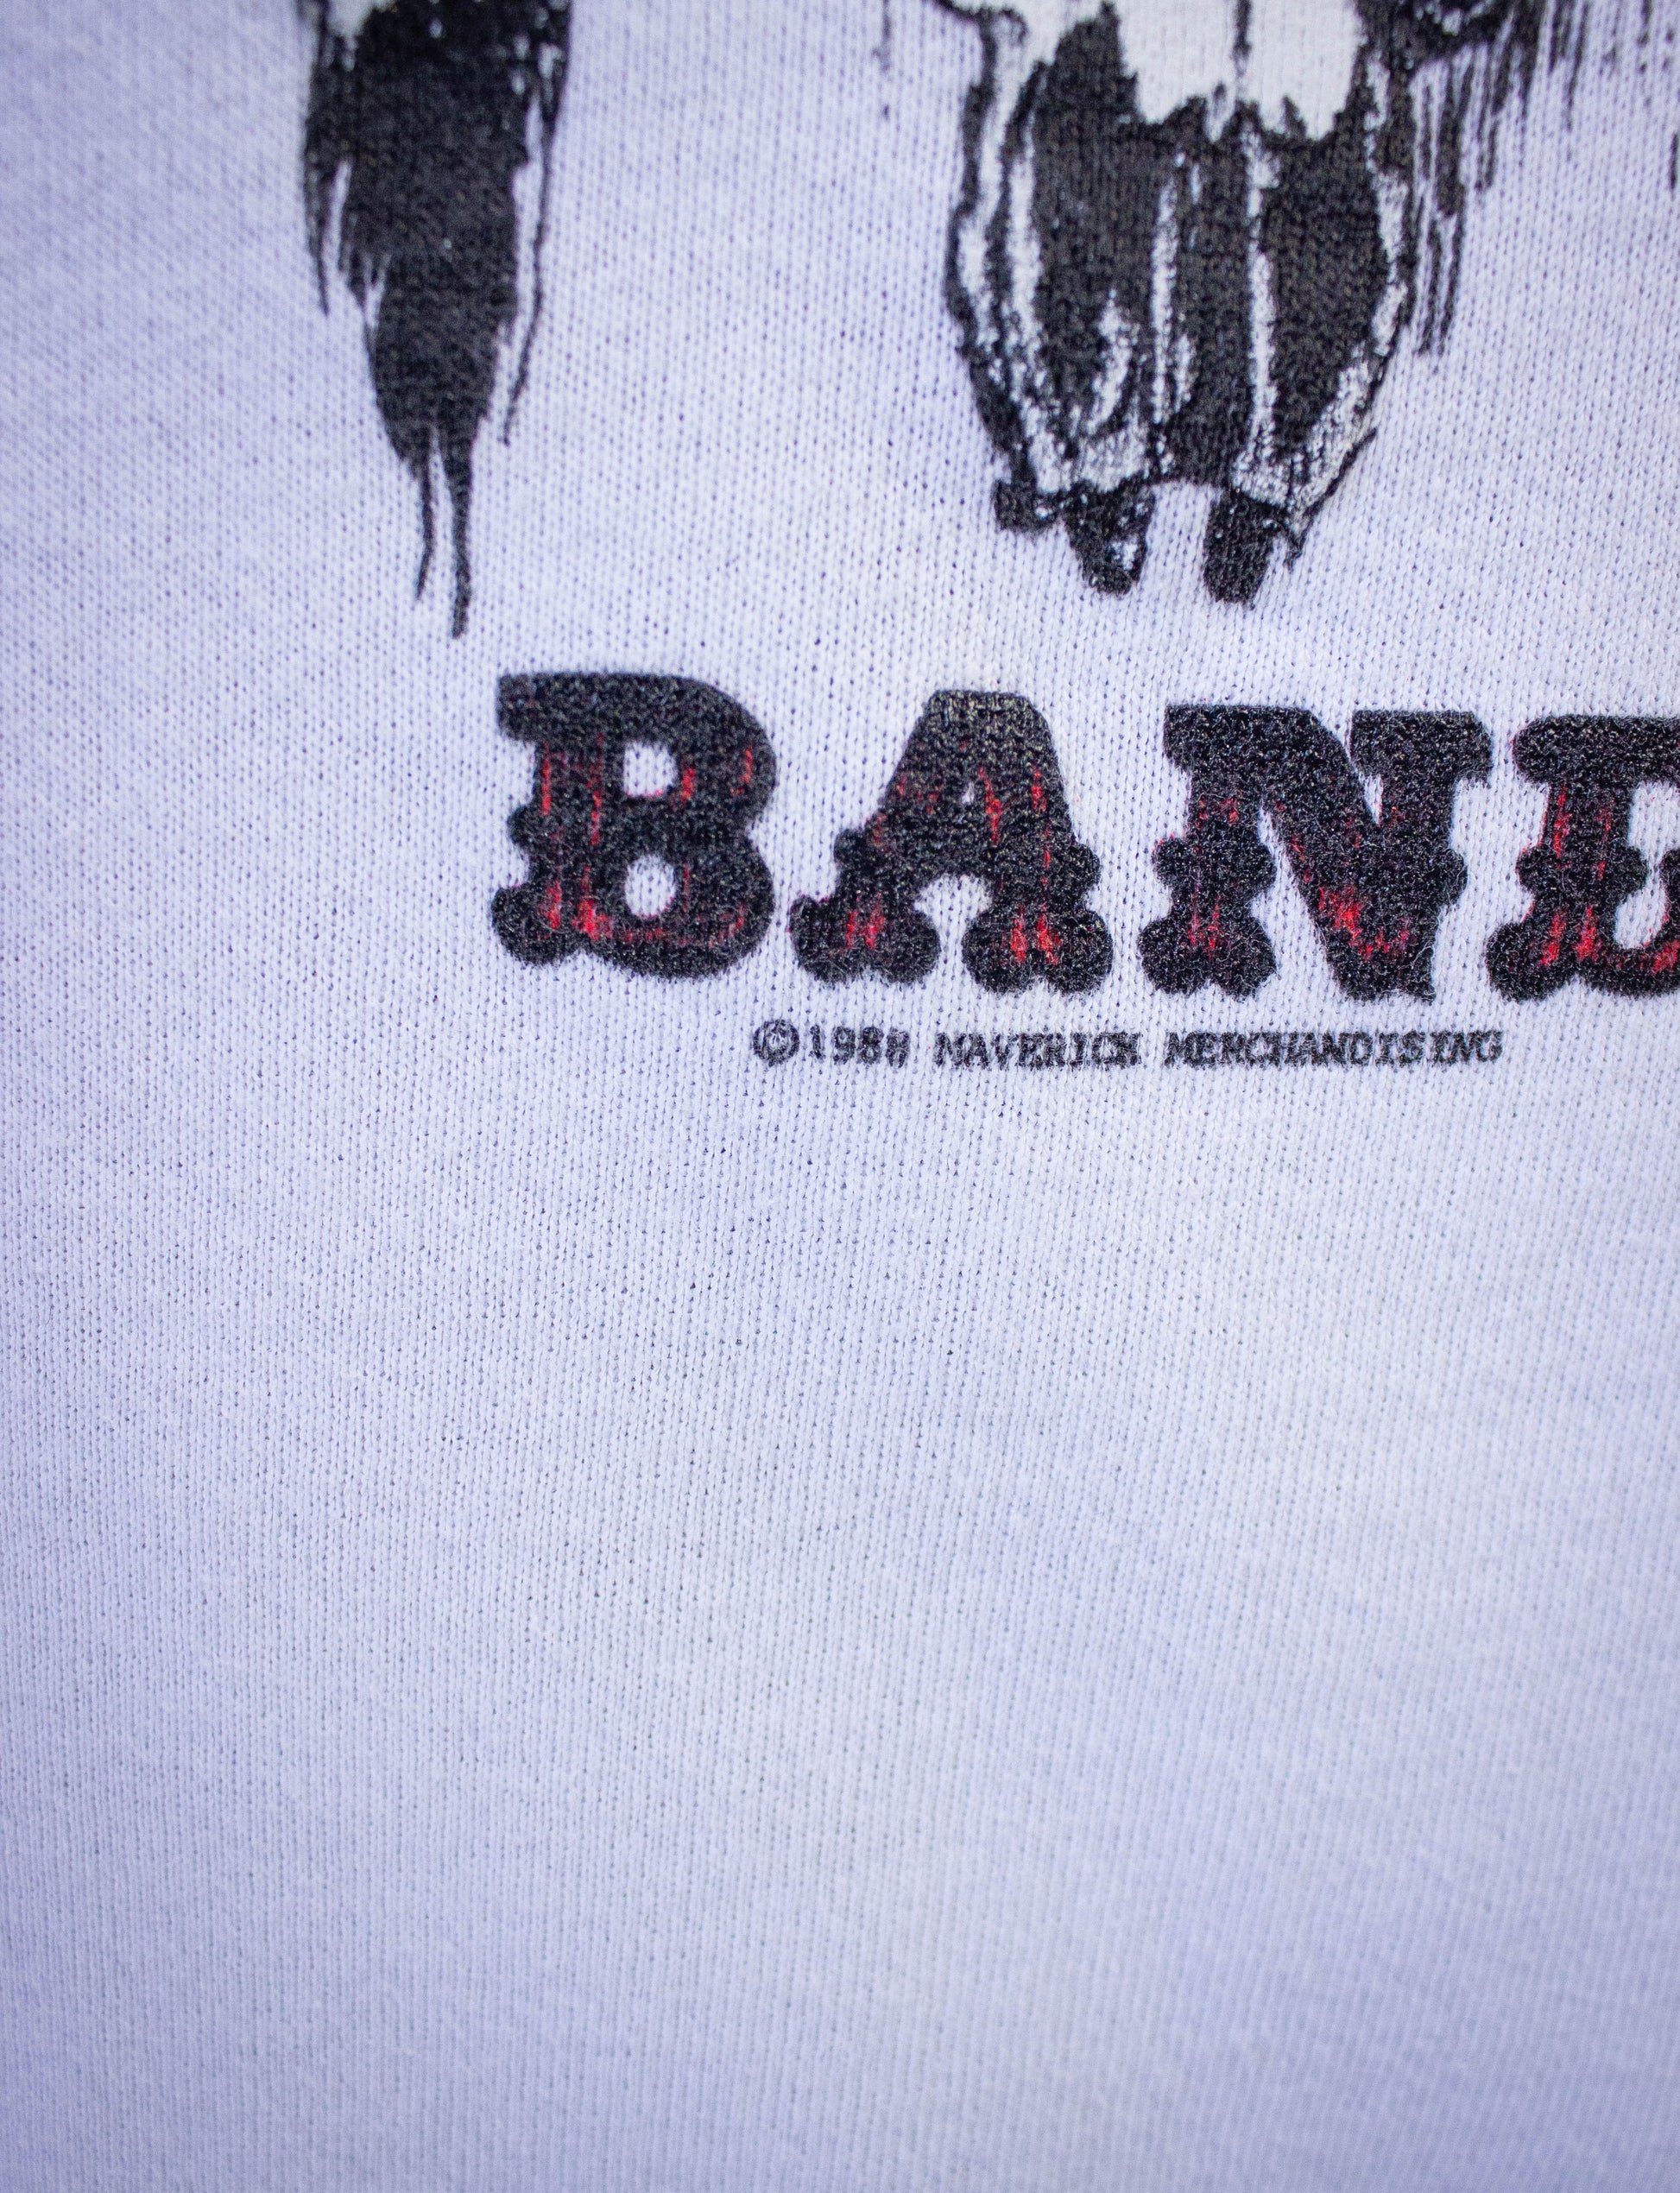 Vintage Charlie Daniels Band Uneasy Rider Graphic Sweatshirt 1988 M